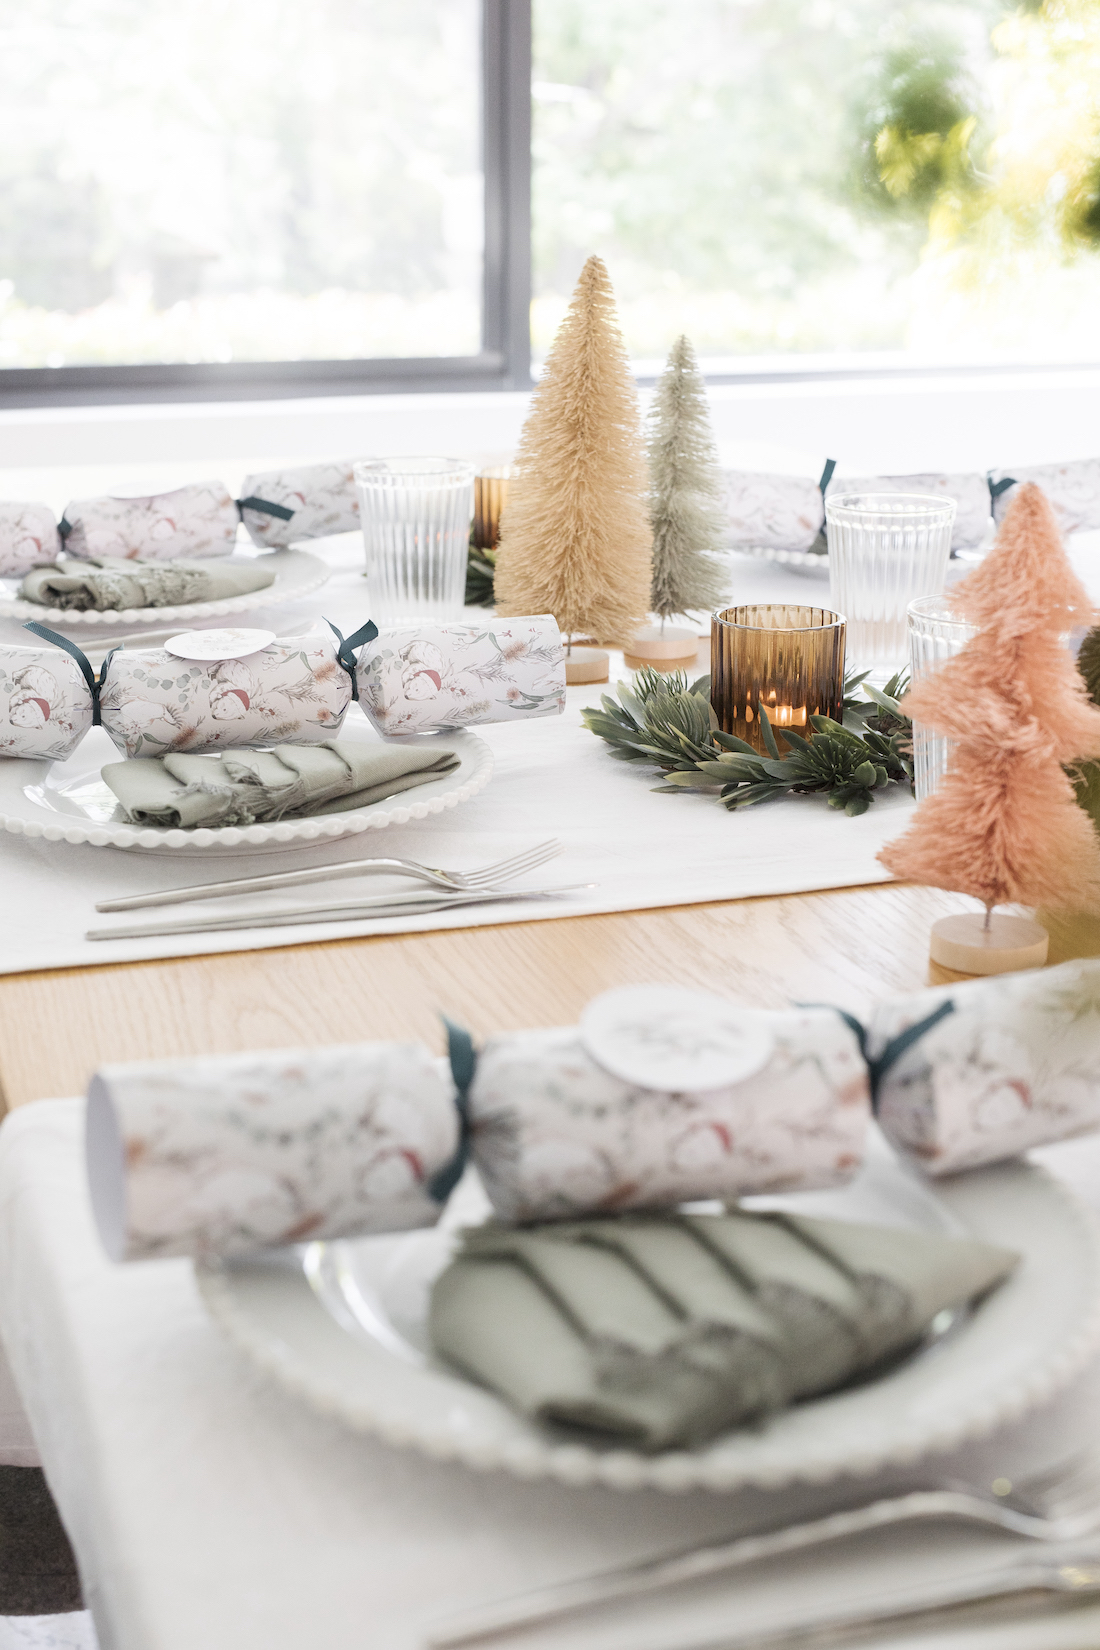 Christmas crackers and Christmas tree napkins on festive table